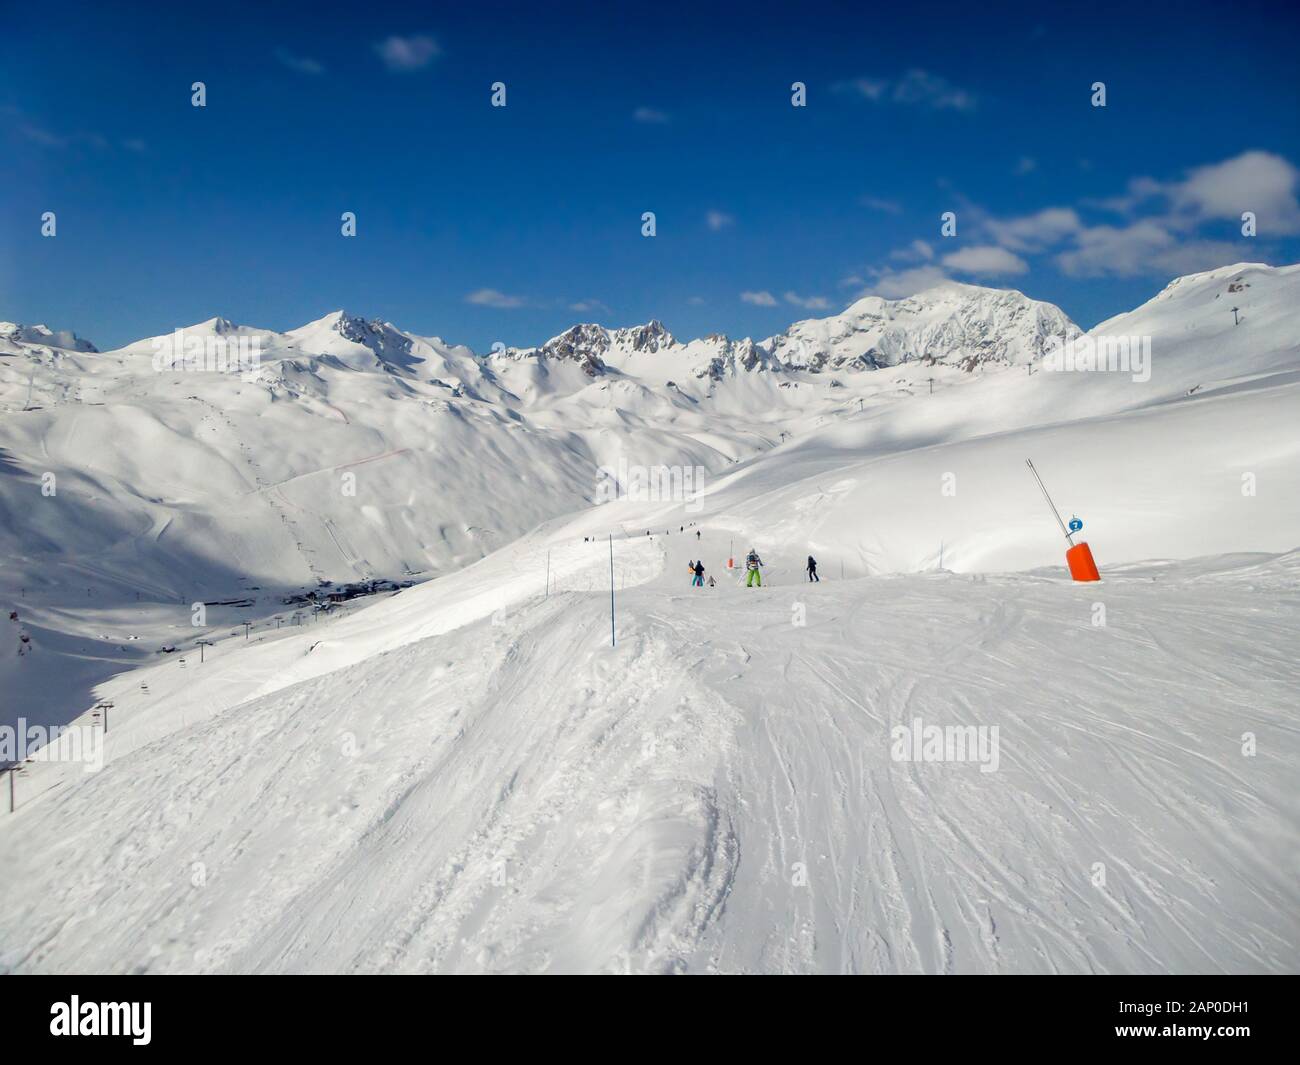 Panorama of ski slopes at Tignes, ski resort in the Alps, France Stock Photo